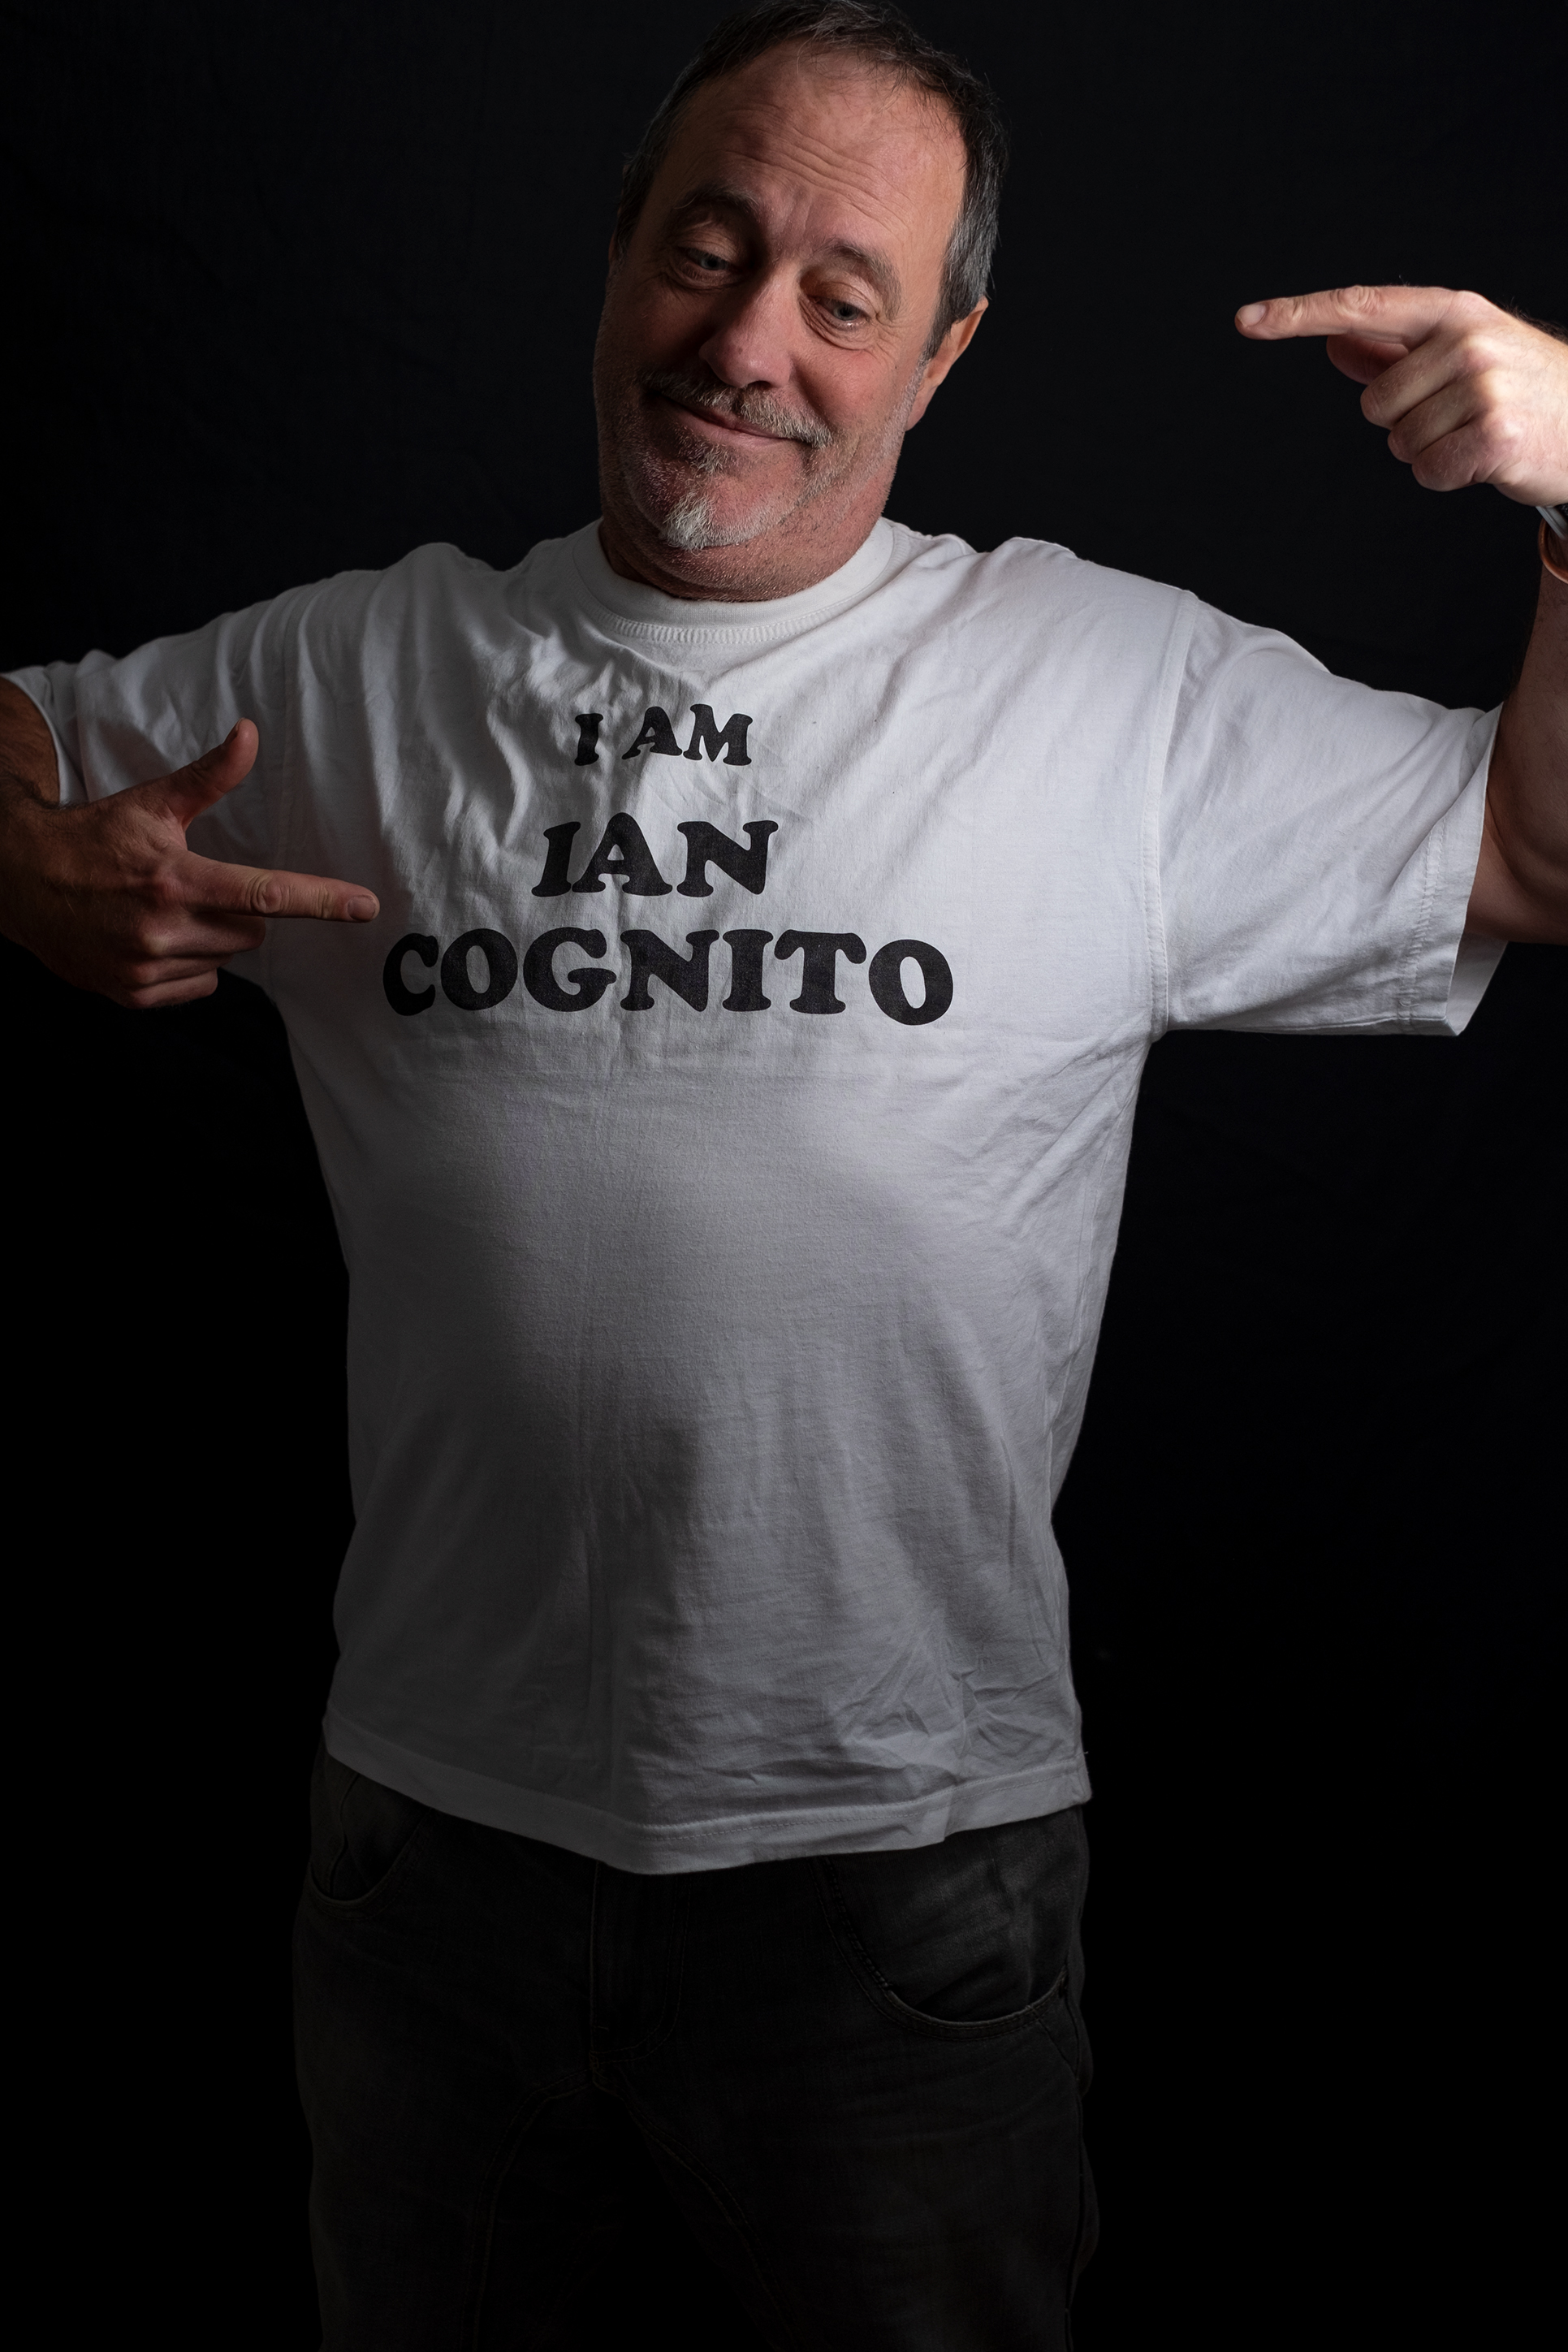 Ian Cognito